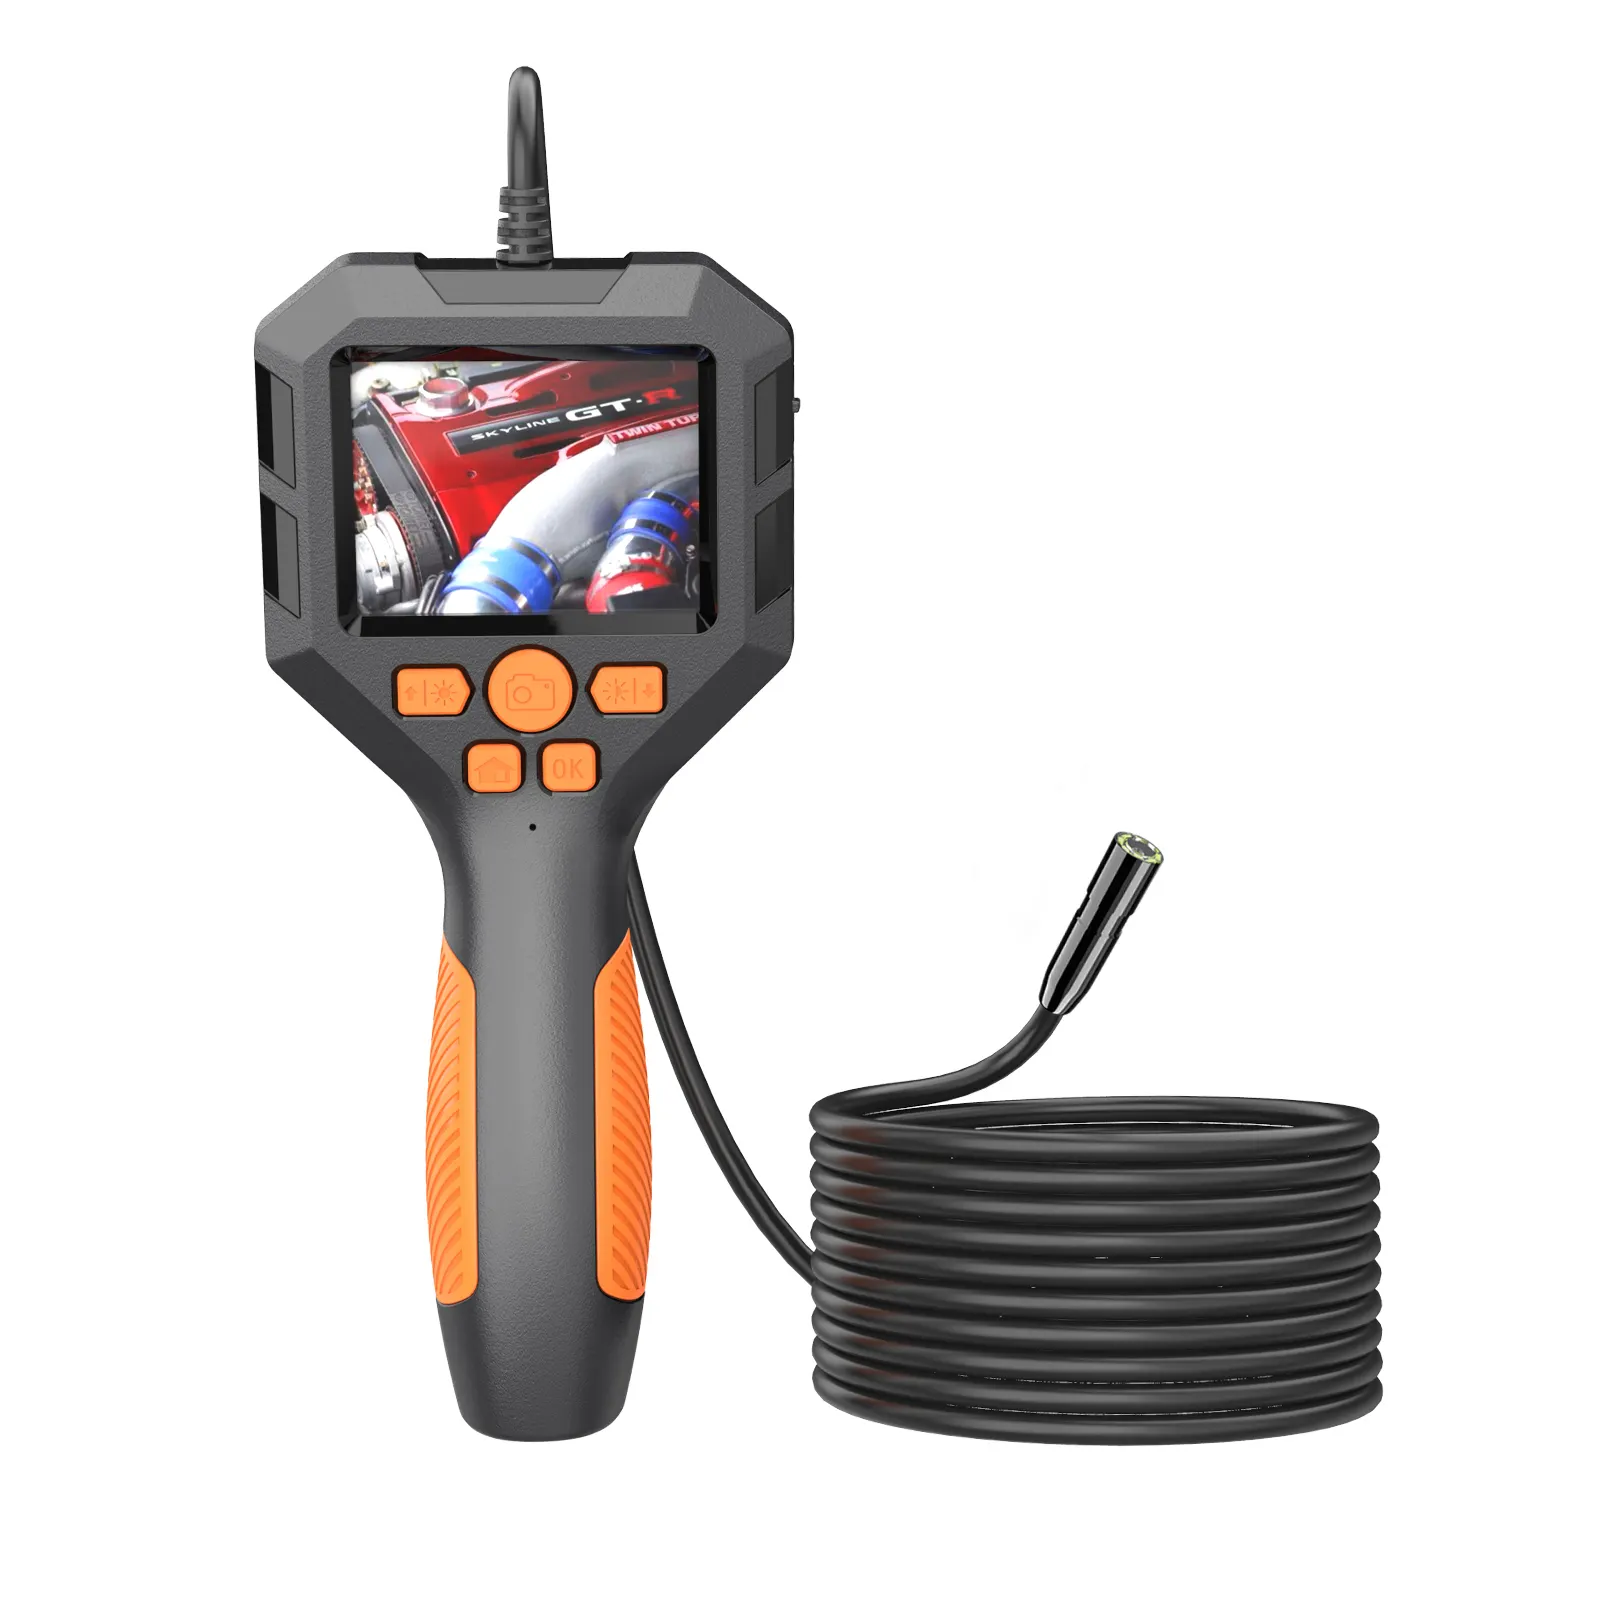 Endoscopio digitale portatile 1080P HD impermeabile Ip68 ispezione endoscopio fotocamera schermo Ips per mantenitore auto per riparazione auto